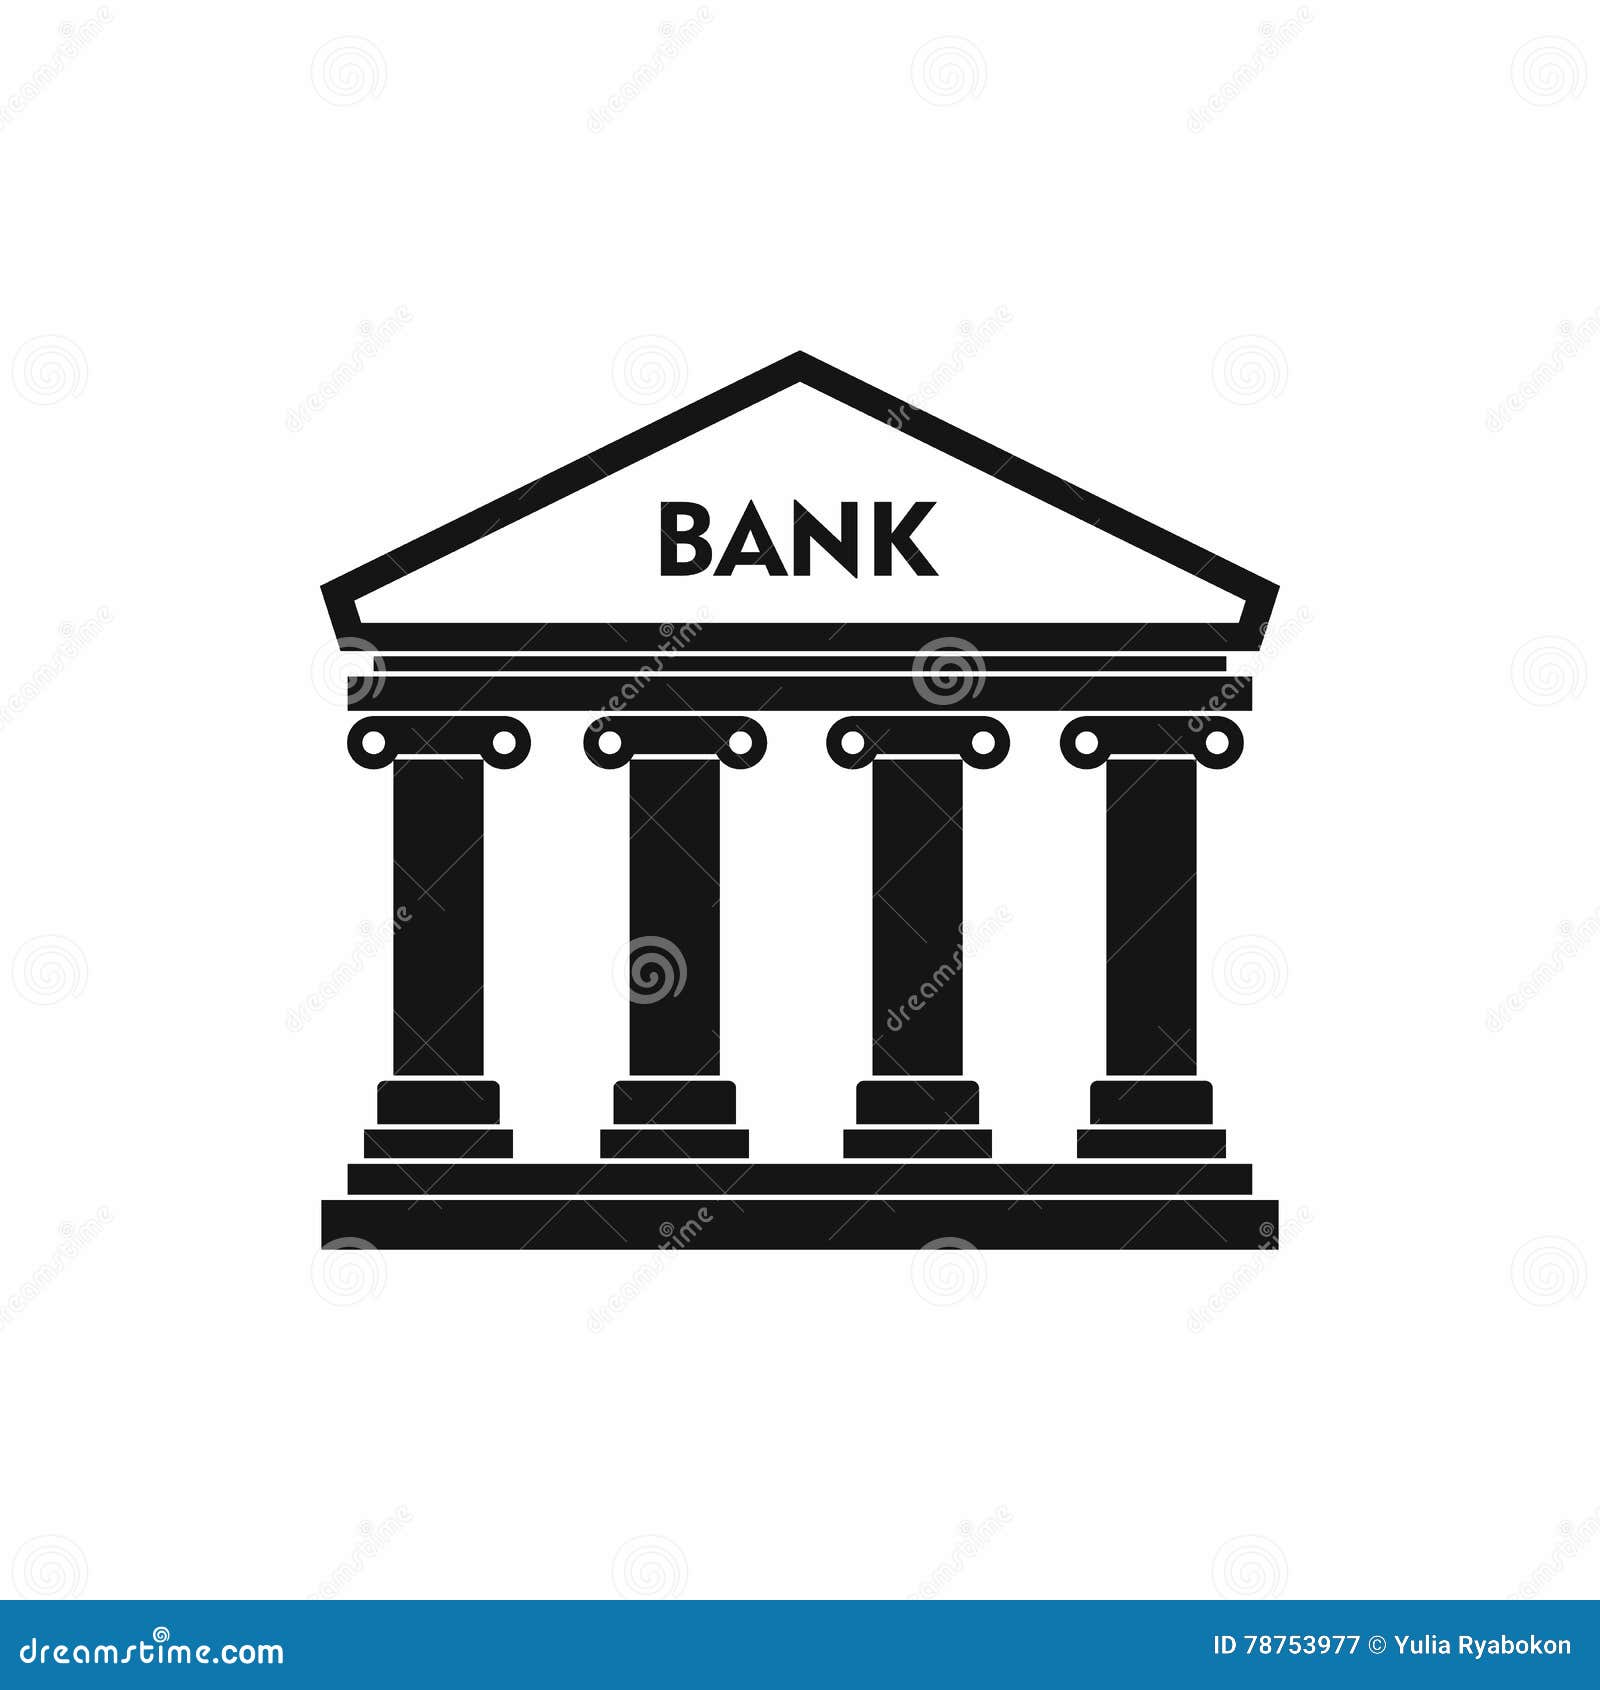 Контур банк сайт. Банк здание. Силуэт здания банка. Банк рисунок. ,Fyrздание на белом фоне.